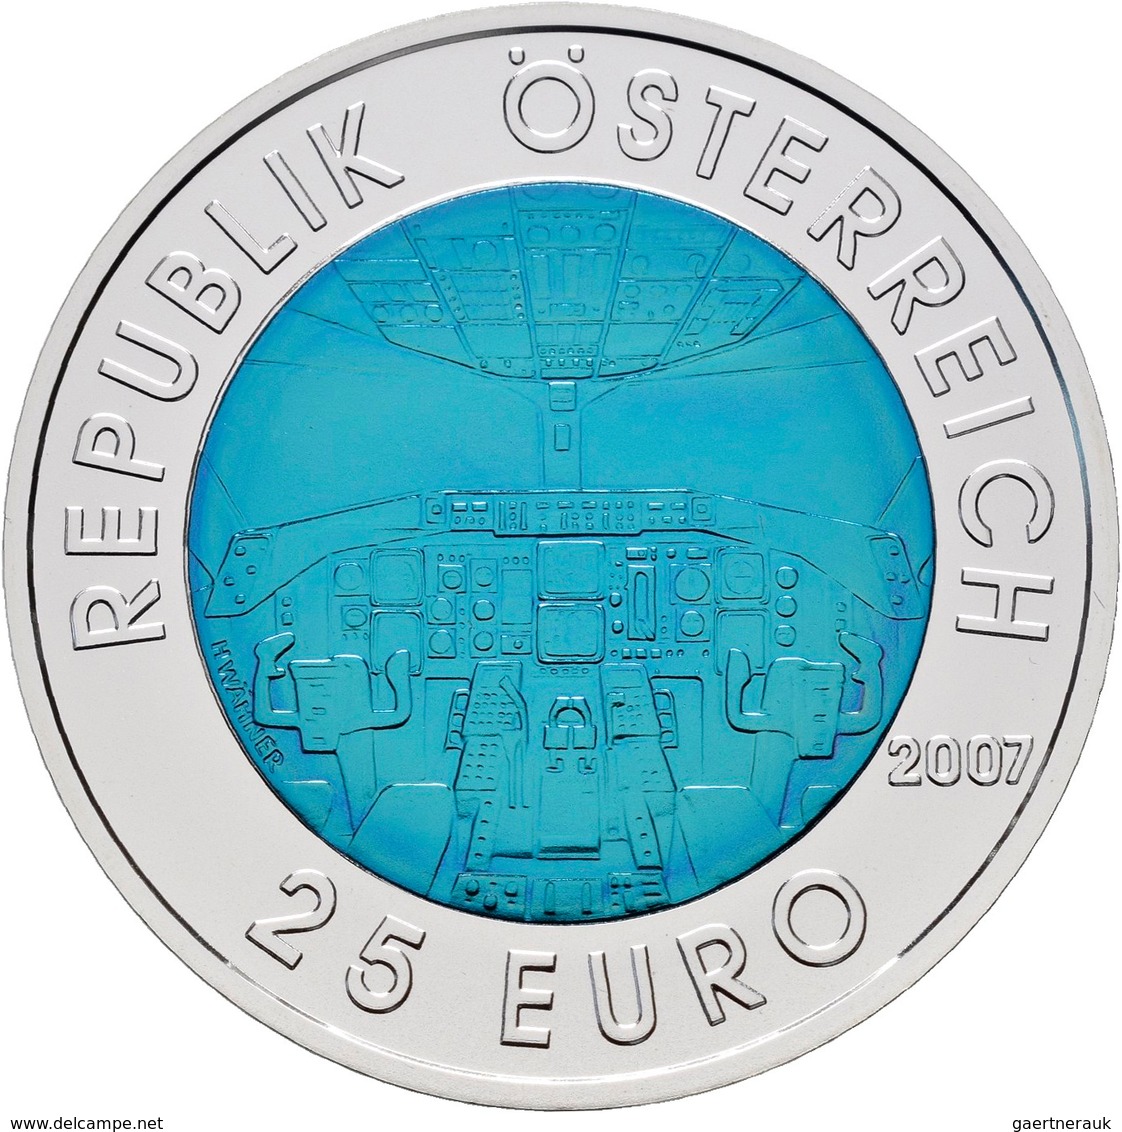 Österreich: Lot 4 Münzen a 25 Euro: 2005 Fernsehen, 2006 Satellitennavigation, 2007 Luftfahrt, 2008